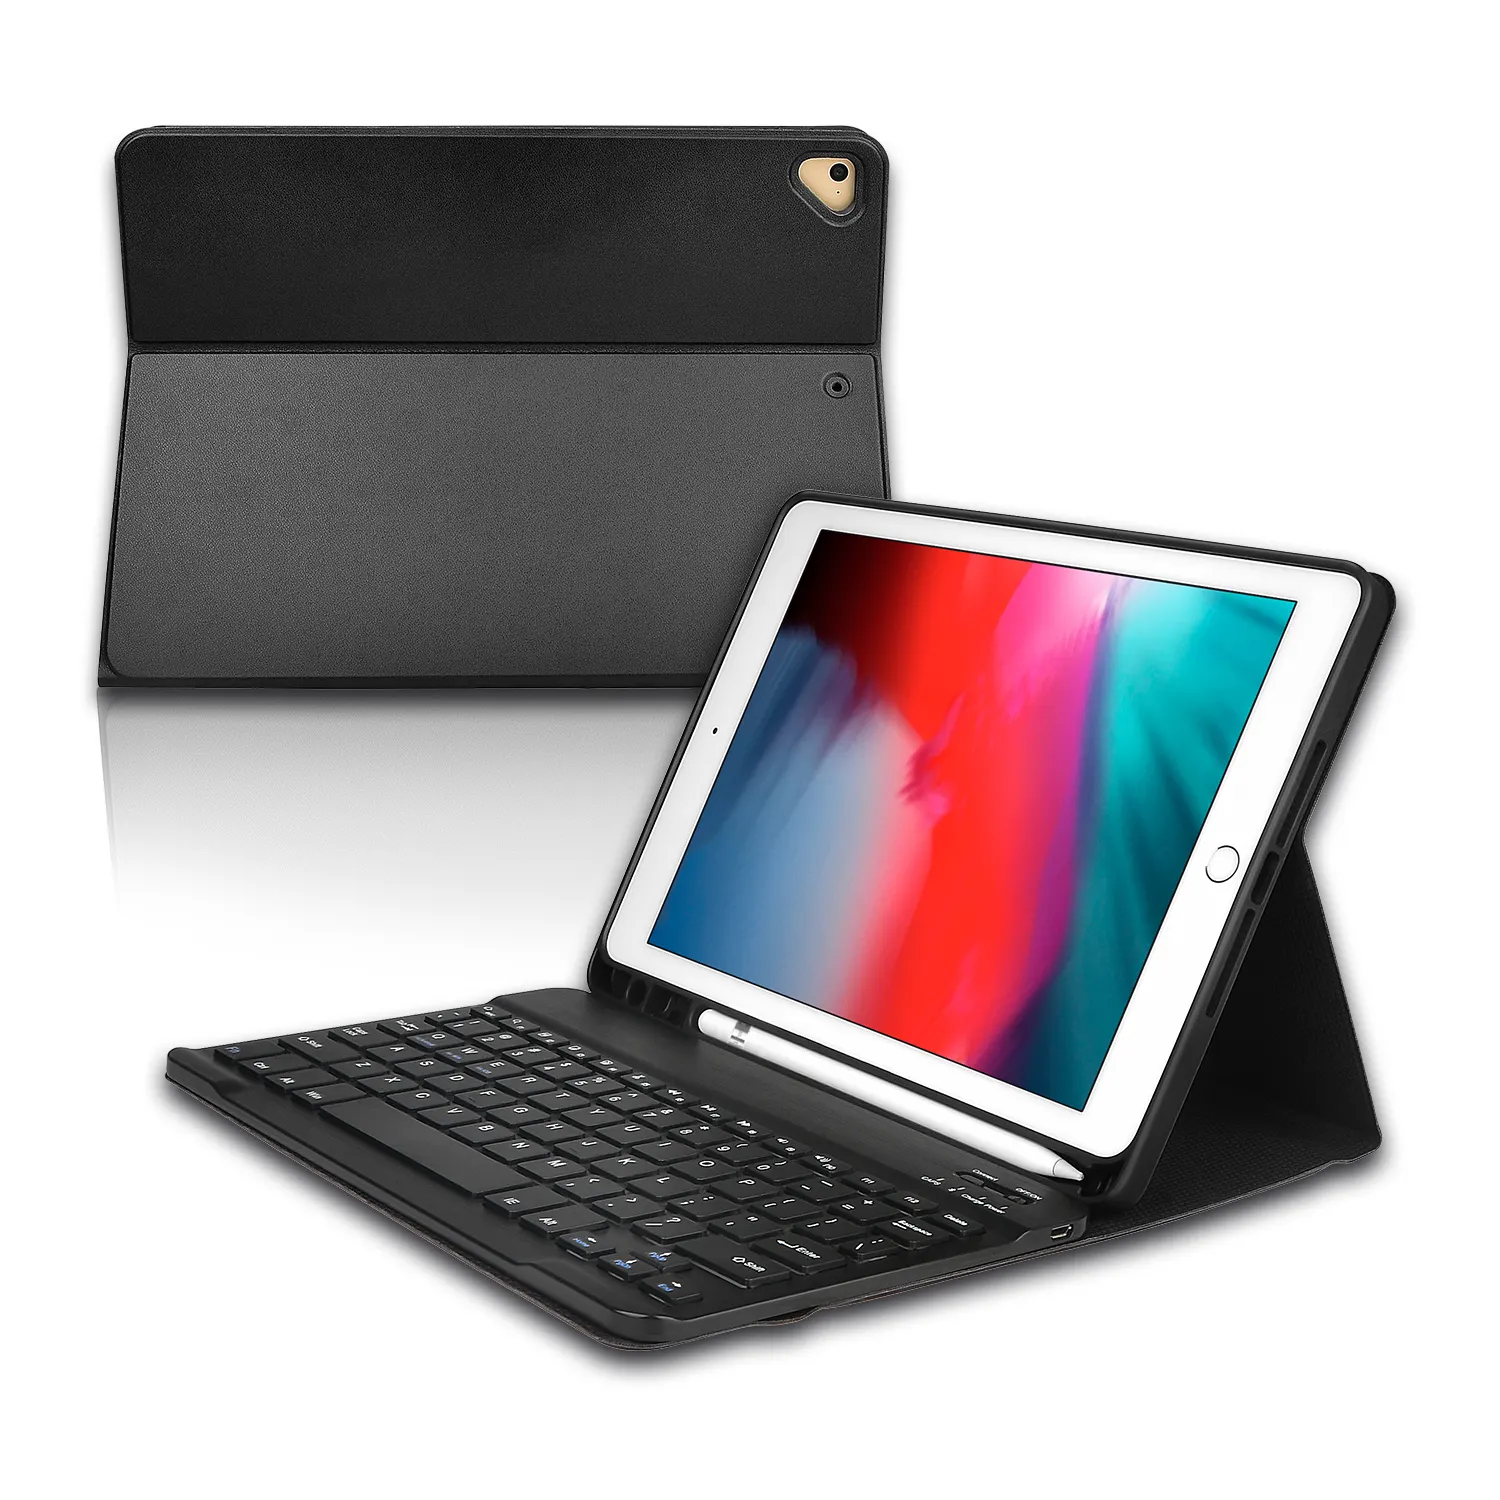 % 100% kalite garantisi kablosuz klavye kılıfı için özel ipad tablet klavye kılıf 9.7 "10.2" 10.5 "11"